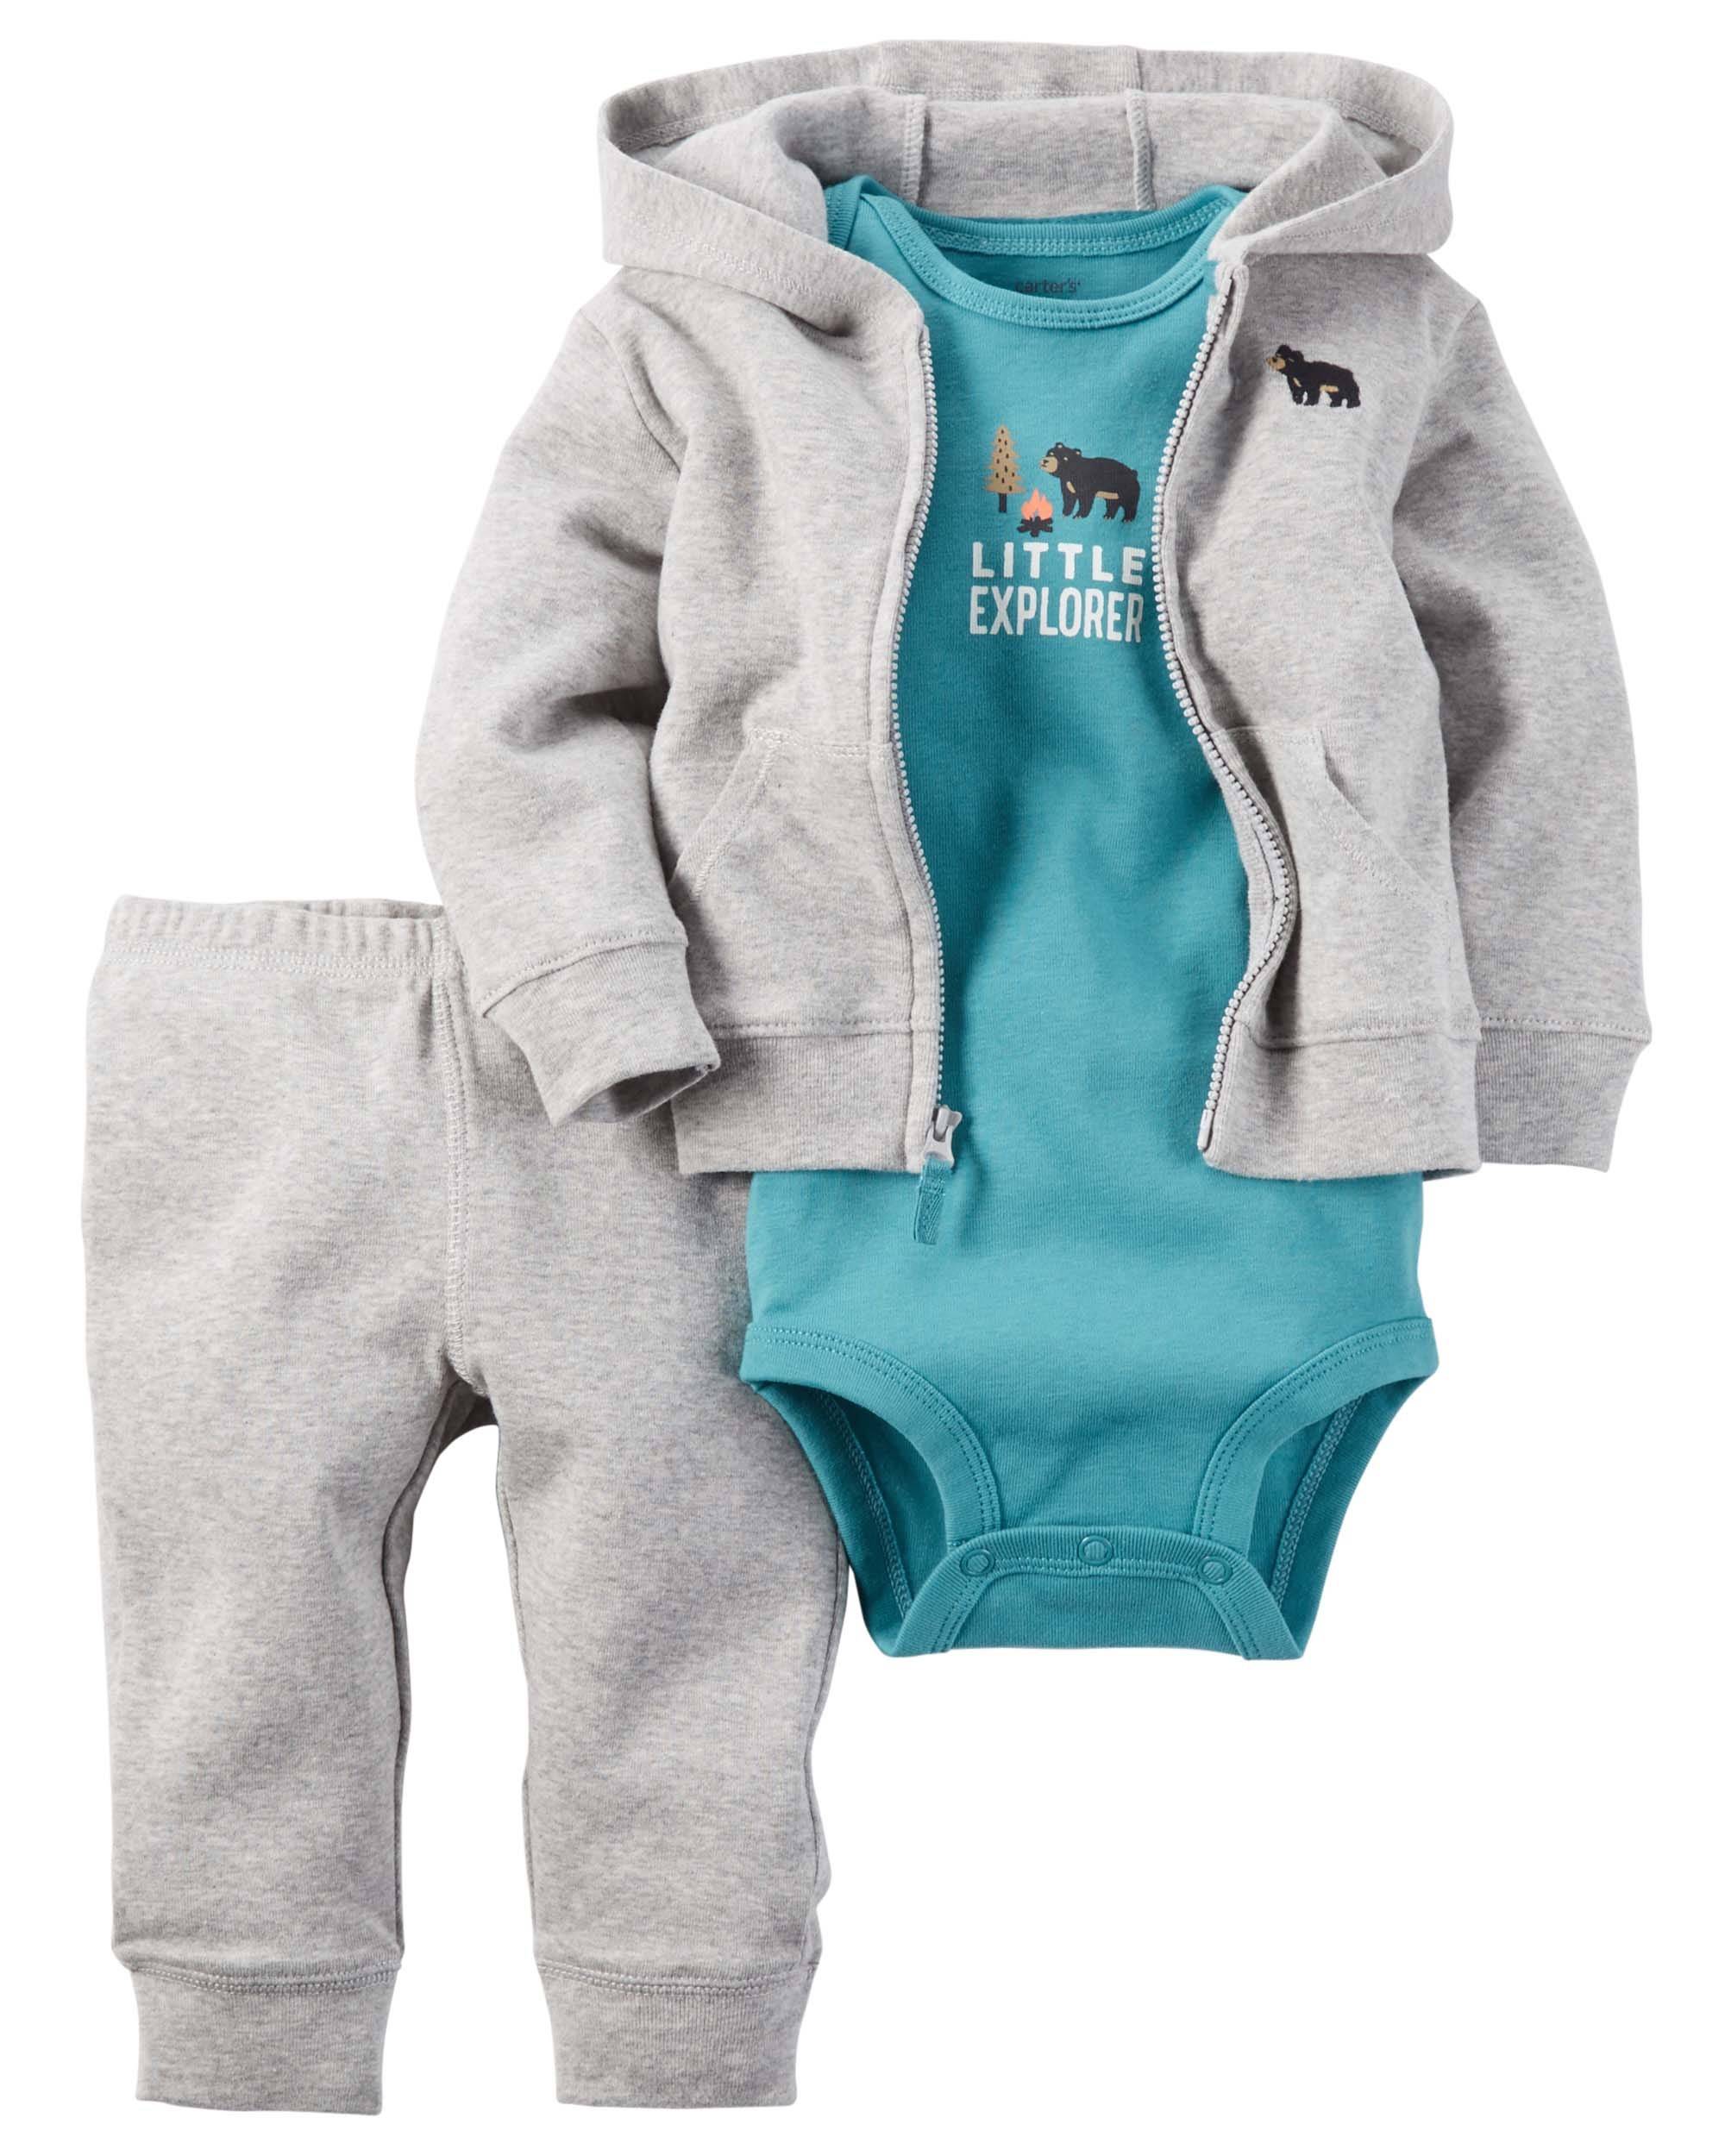 Купить вещи на мальчика. Костюм Carters 1h359510. Костюм тройка Картерс. Одежда для новорожденных мальчиков Картерс. Комплект Картерс для новорожденных мальчиков.